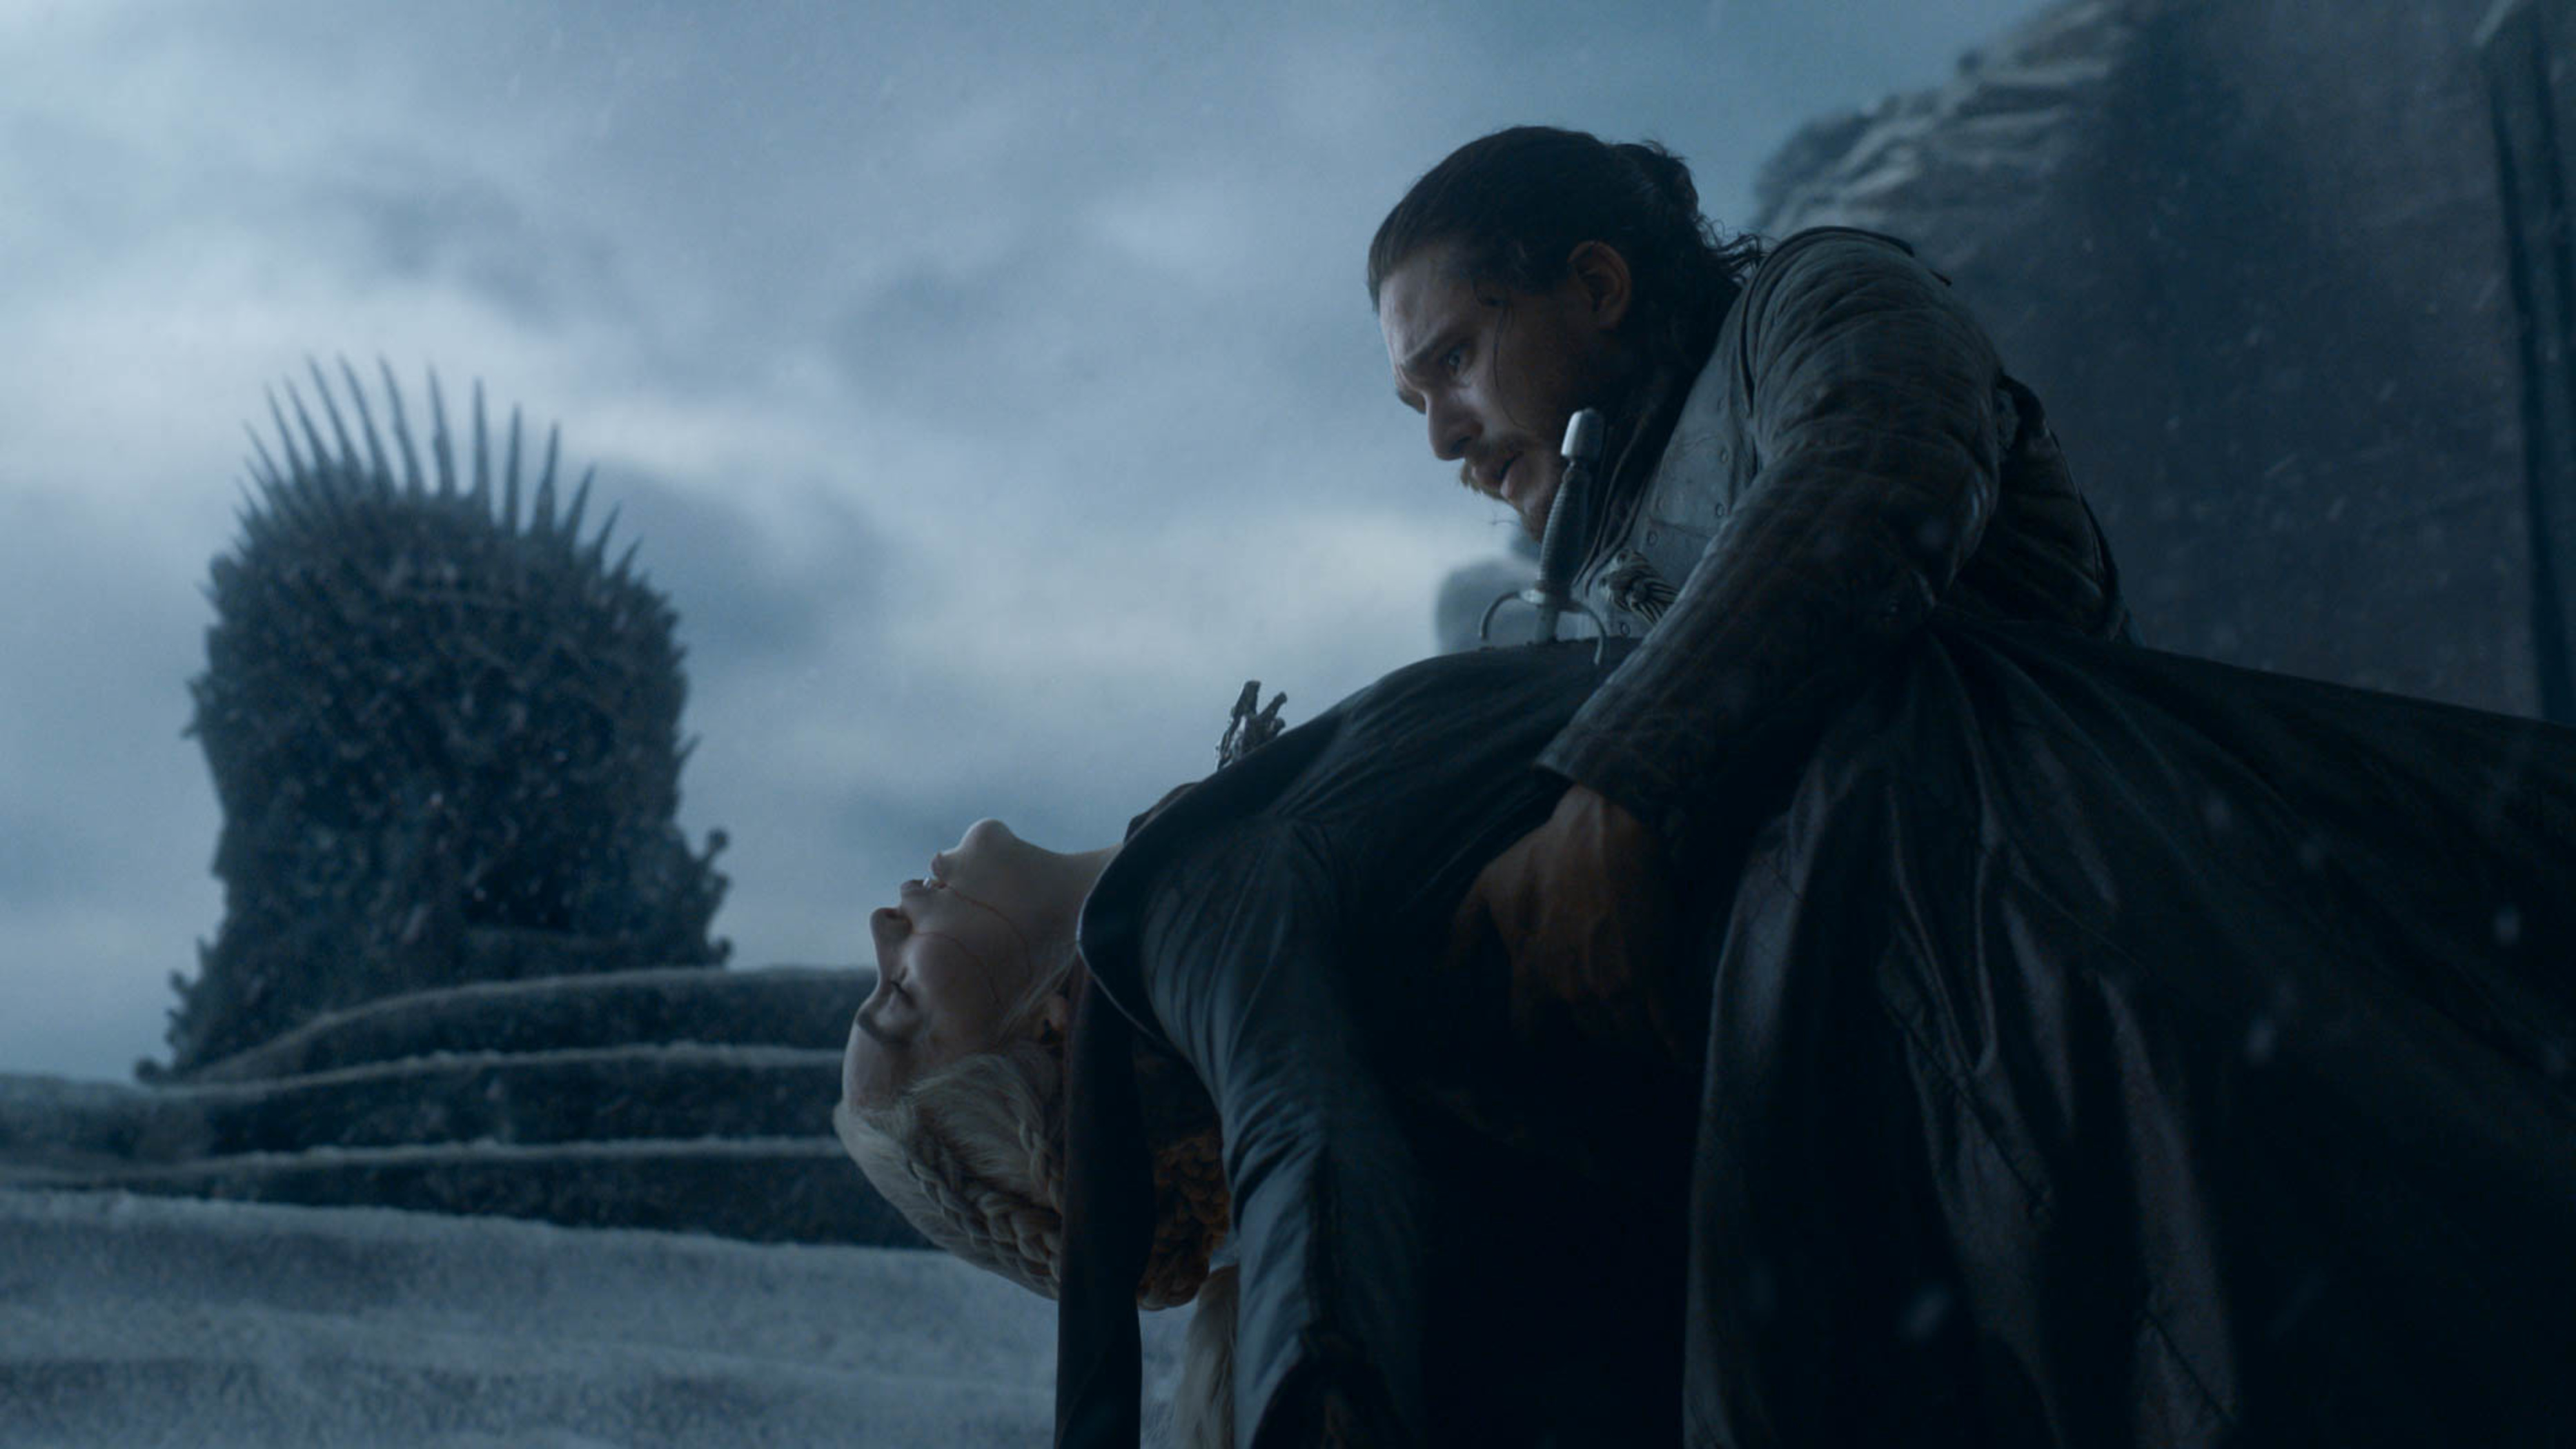 Daenerys Targaryen dies in Jon Snow's arms in the Game of Thrones series finale